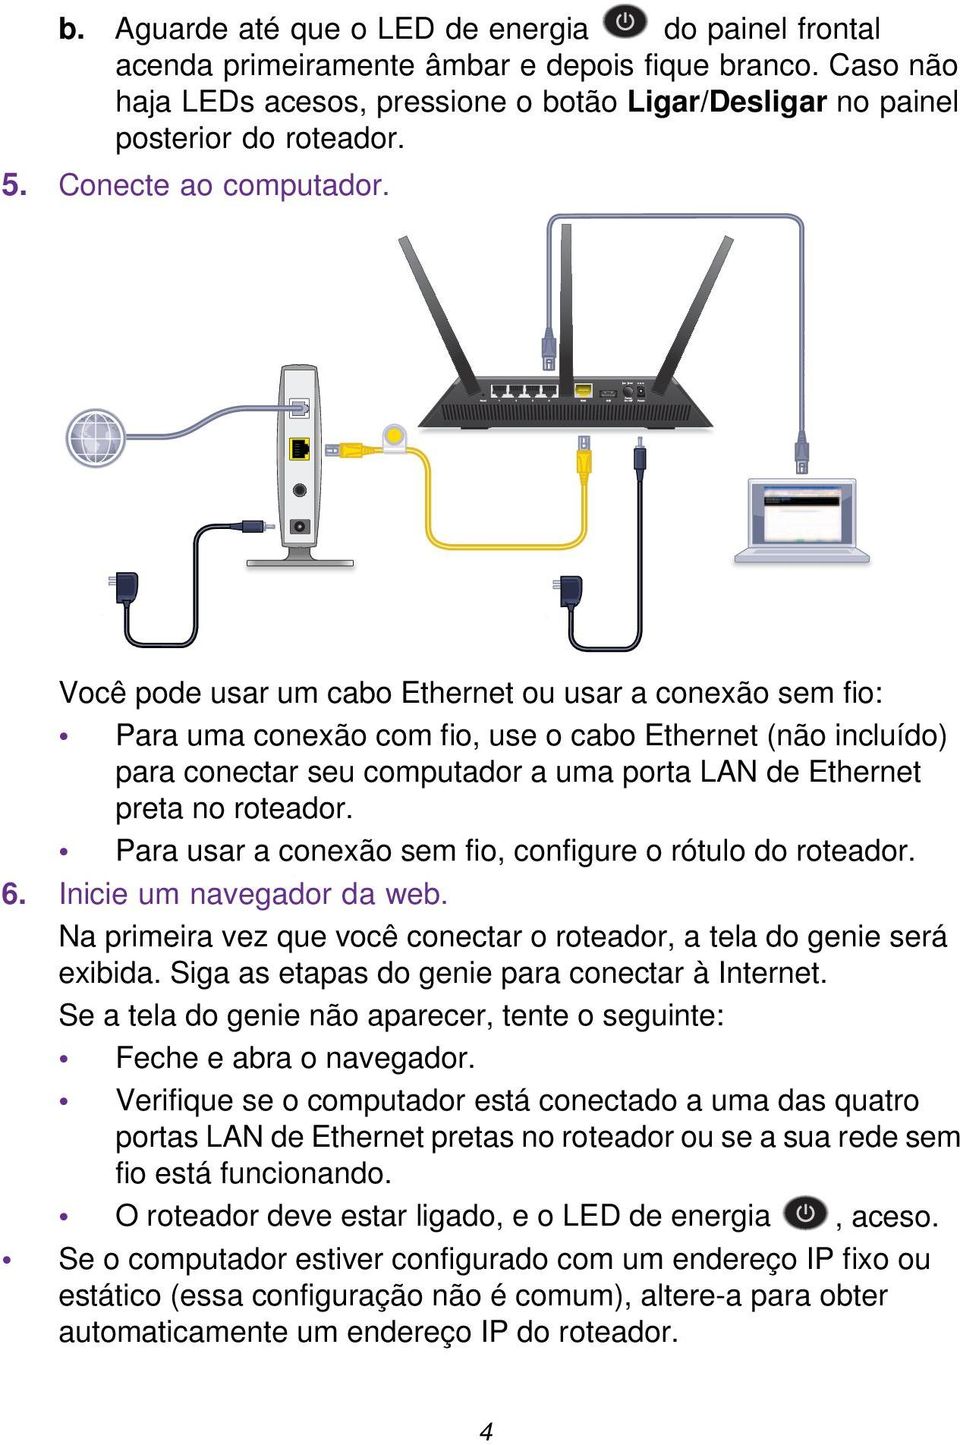 Você pode usar um cabo Ethernet ou usar a conexão sem fio: Para uma conexão com fio, use o cabo Ethernet (não incluído) para conectar seu computador a uma porta LAN de Ethernet preta no roteador.